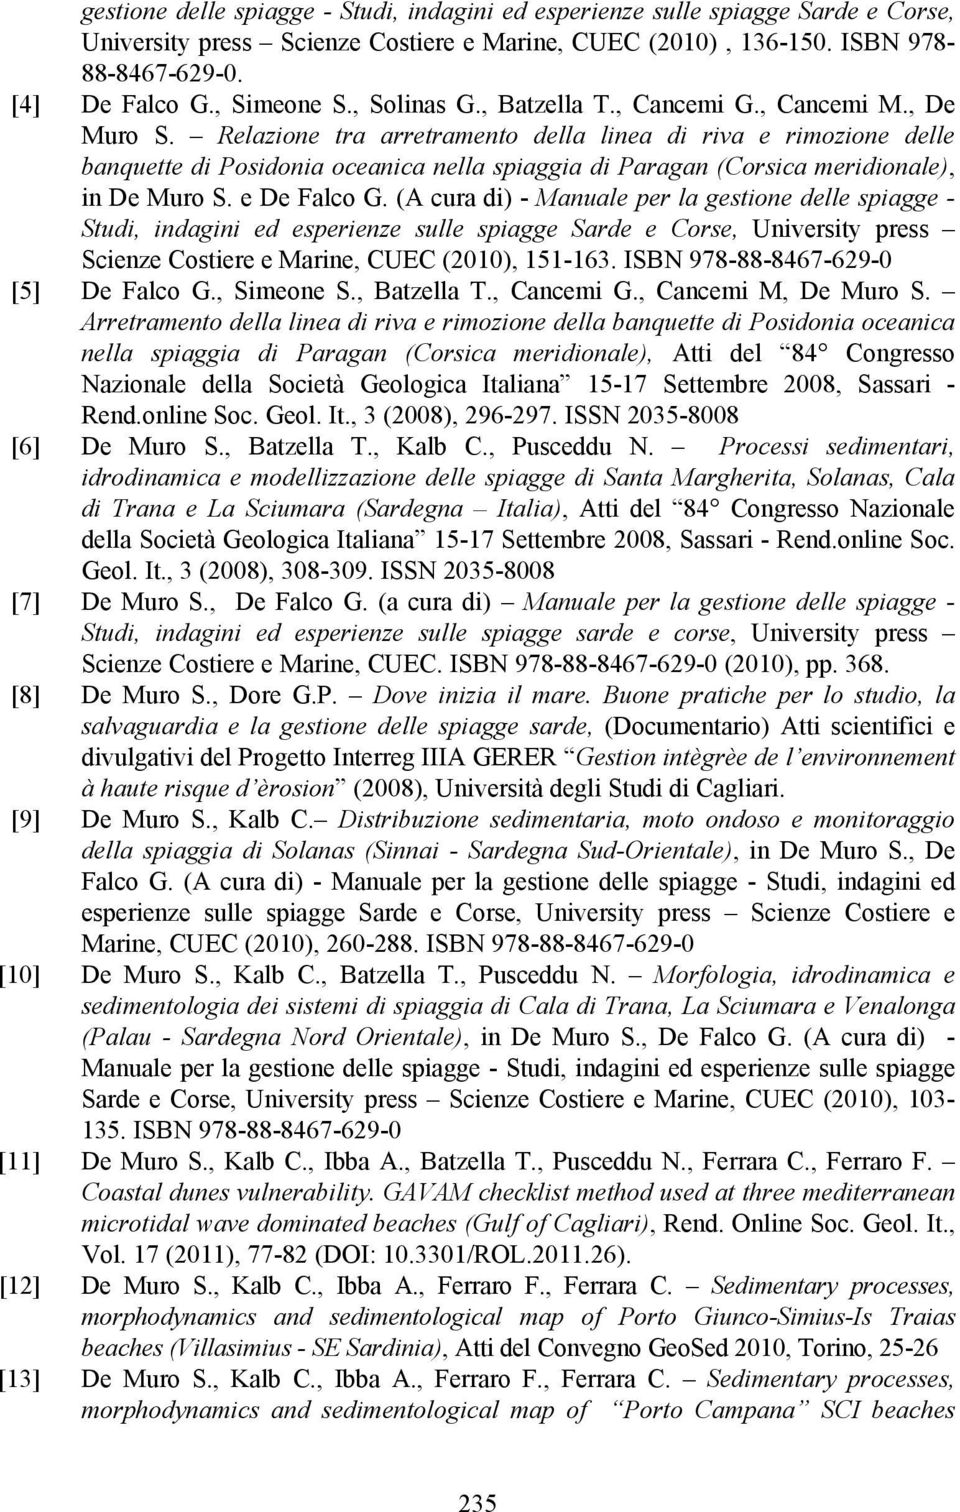 Relazione tra arretramento della linea di riva e rimozione delle banquette di Posidonia oceanica nella spiaggia di Paragan (Corsica meridionale), in De Muro S. e De Falco G.